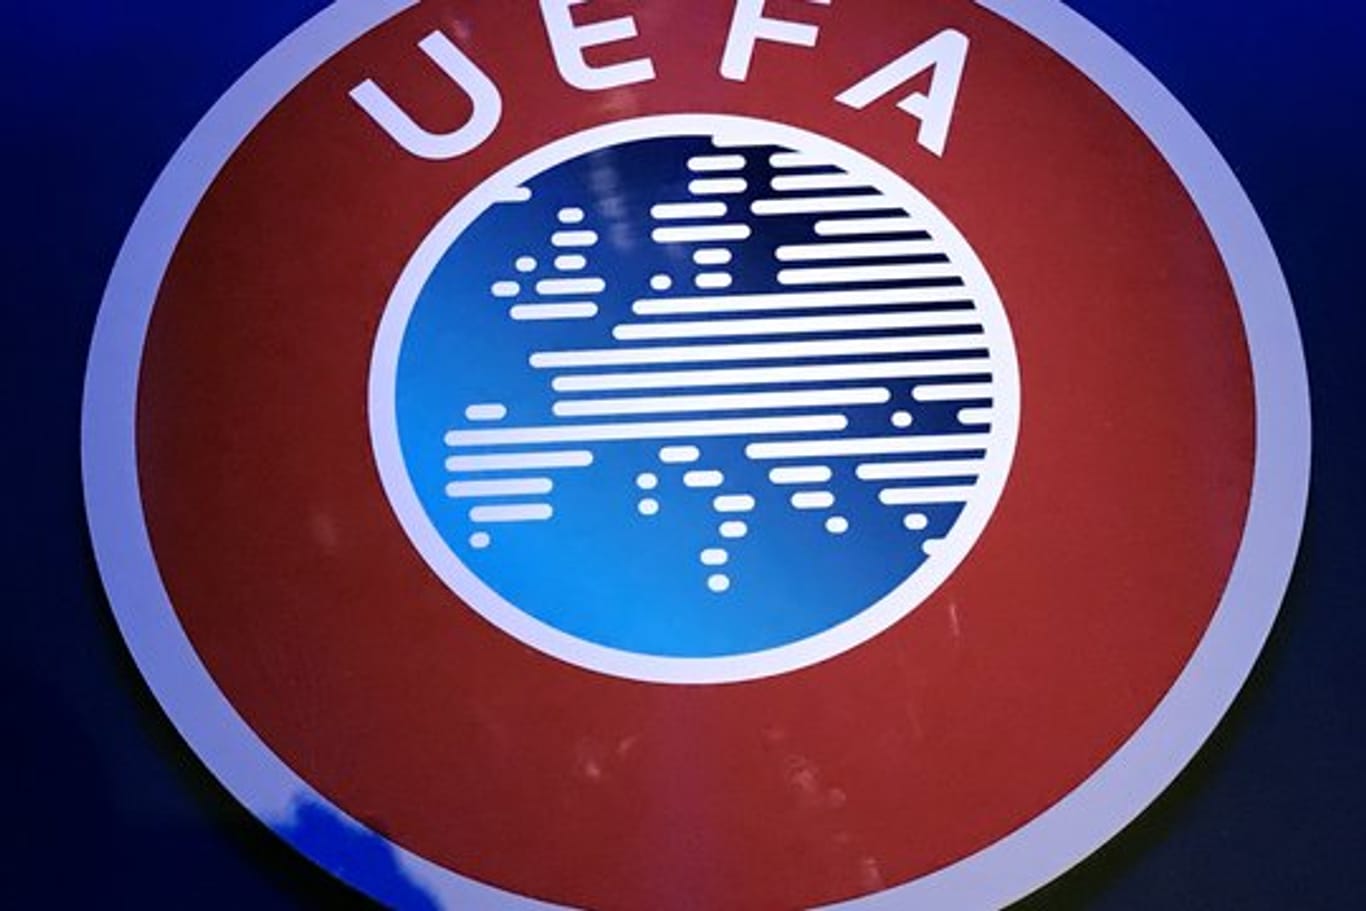 Auf einer Krisensitzung beschäftigt sich die UEFA mit einer möglichen Absage der Fußball-EM 2020.